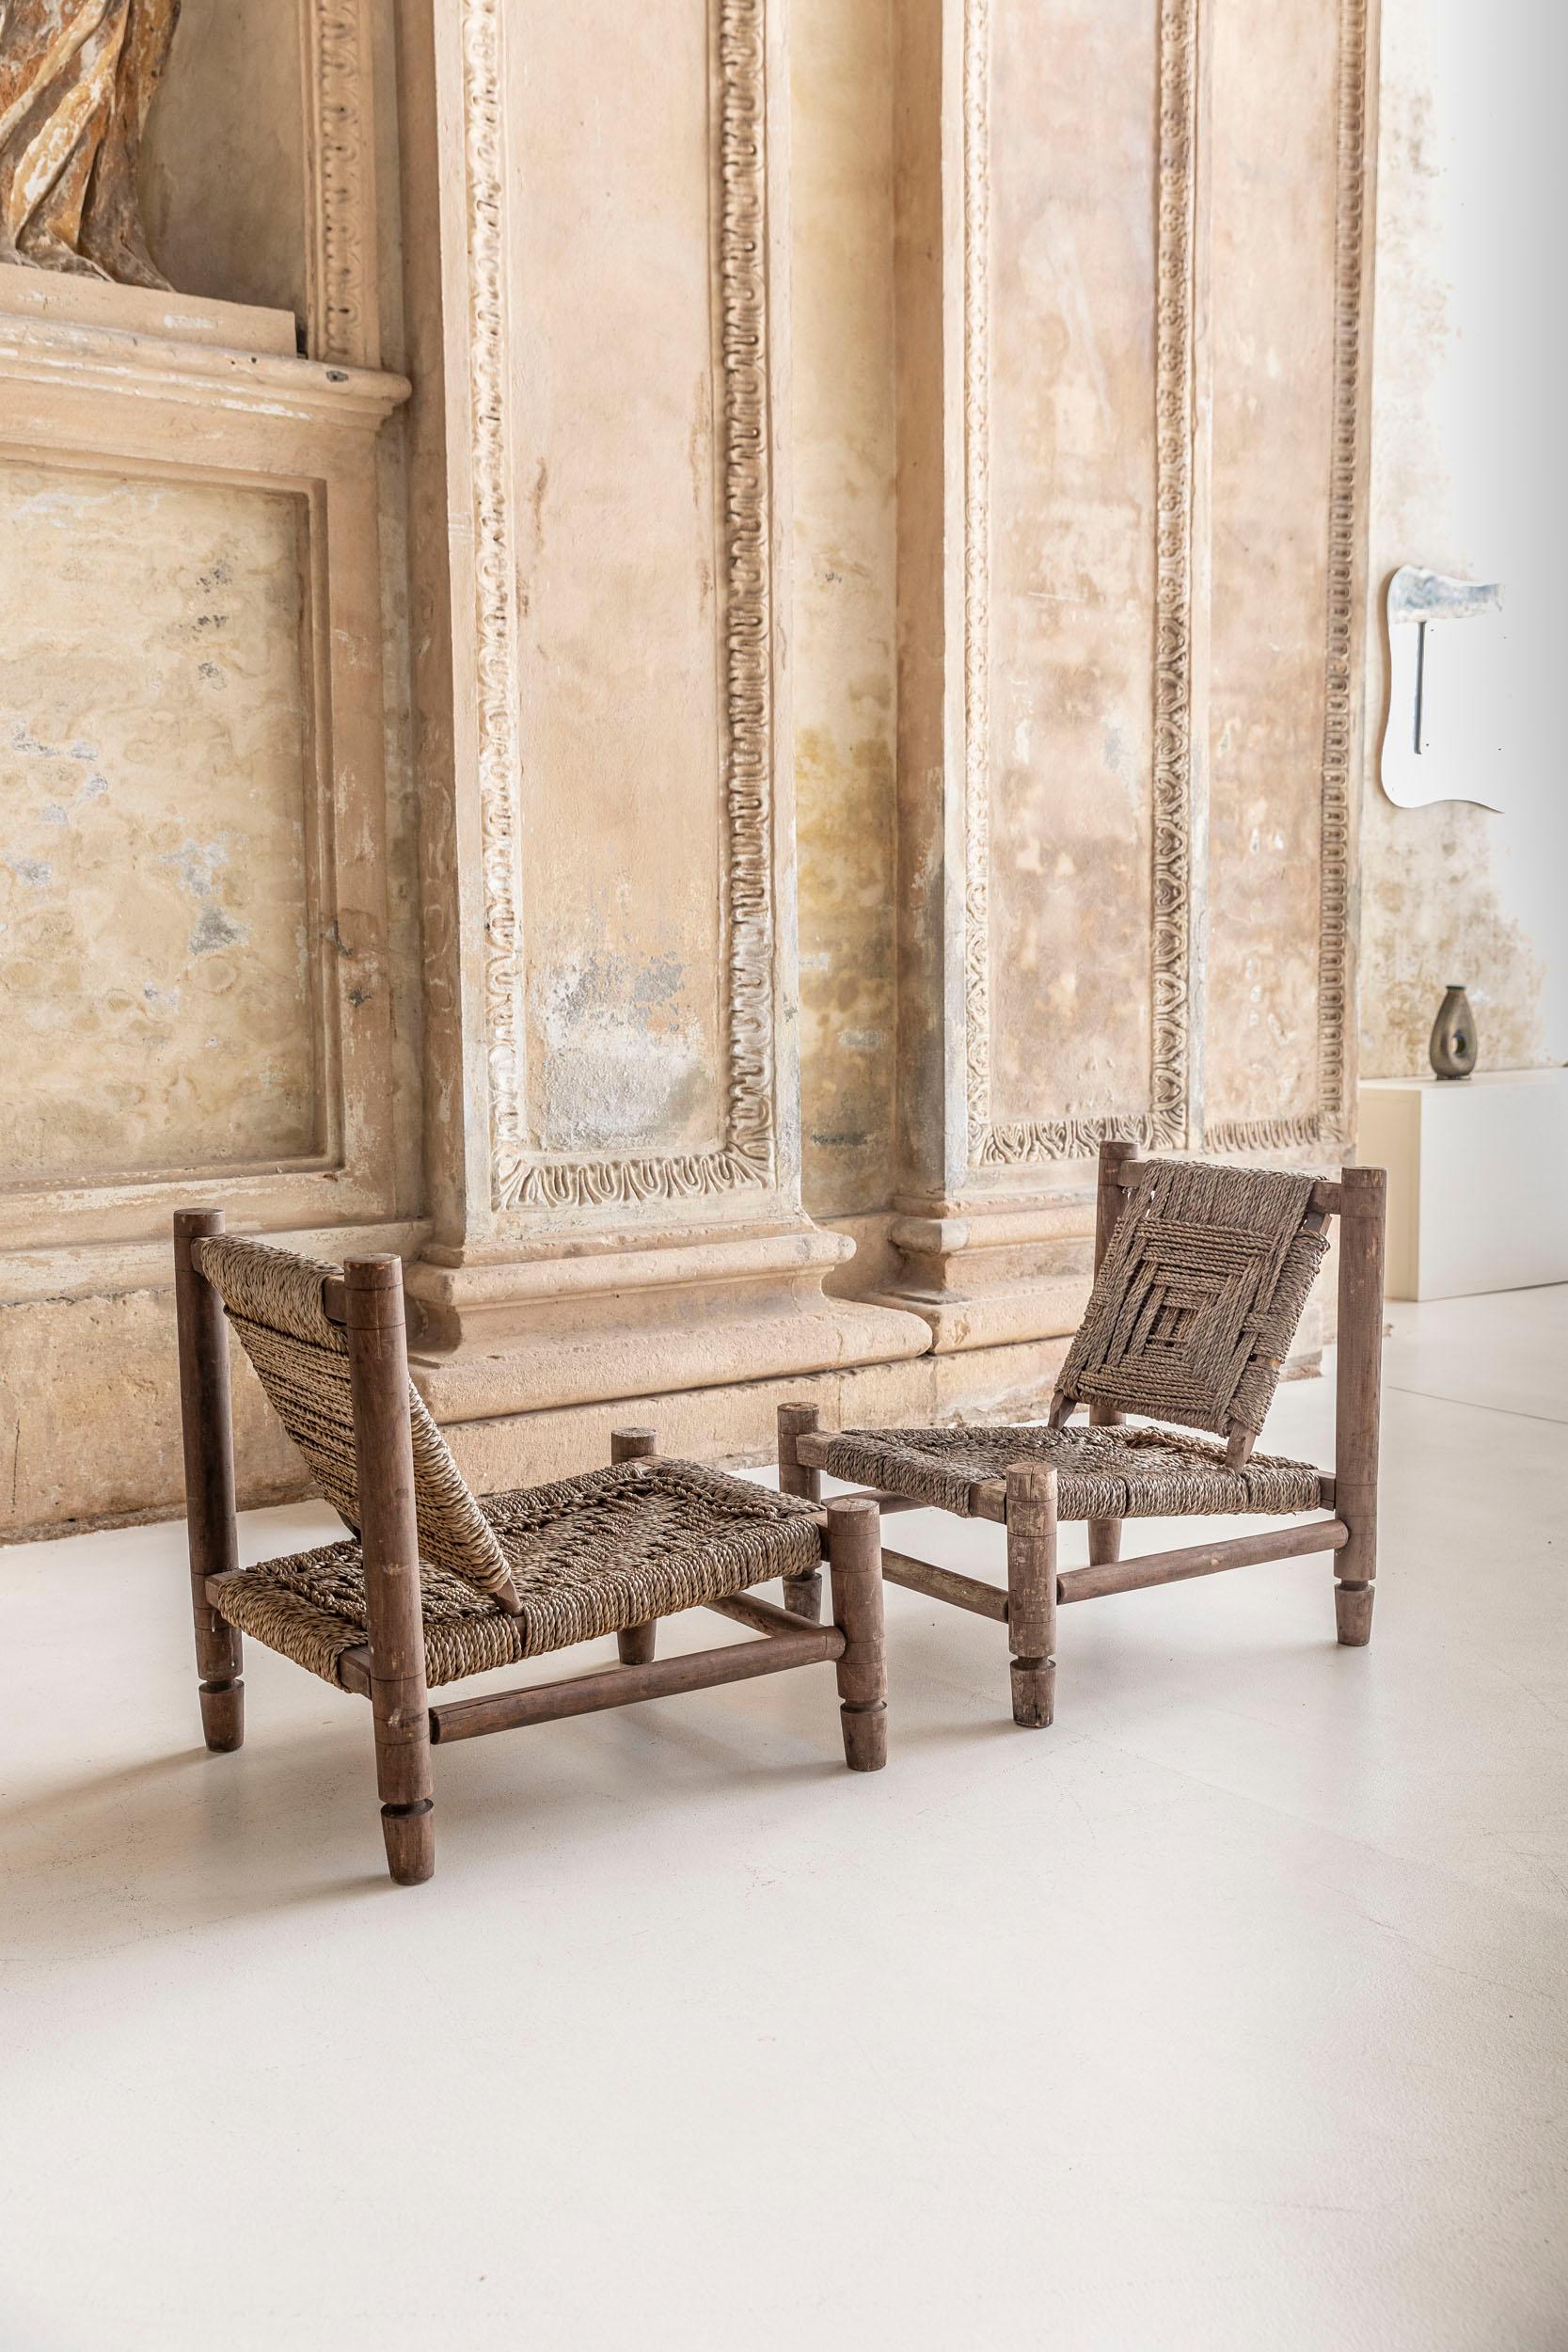 Rare ensemble de six chaises attribuées à Adrien Audox et Frida Minet.
Les chaises sont fabriquées en bois de hêtre, avec une assise et un dossier en corde d'abaca.
Les pieds présentent le bois sculpté typique d'Audoux Minet.
Les chaises sont